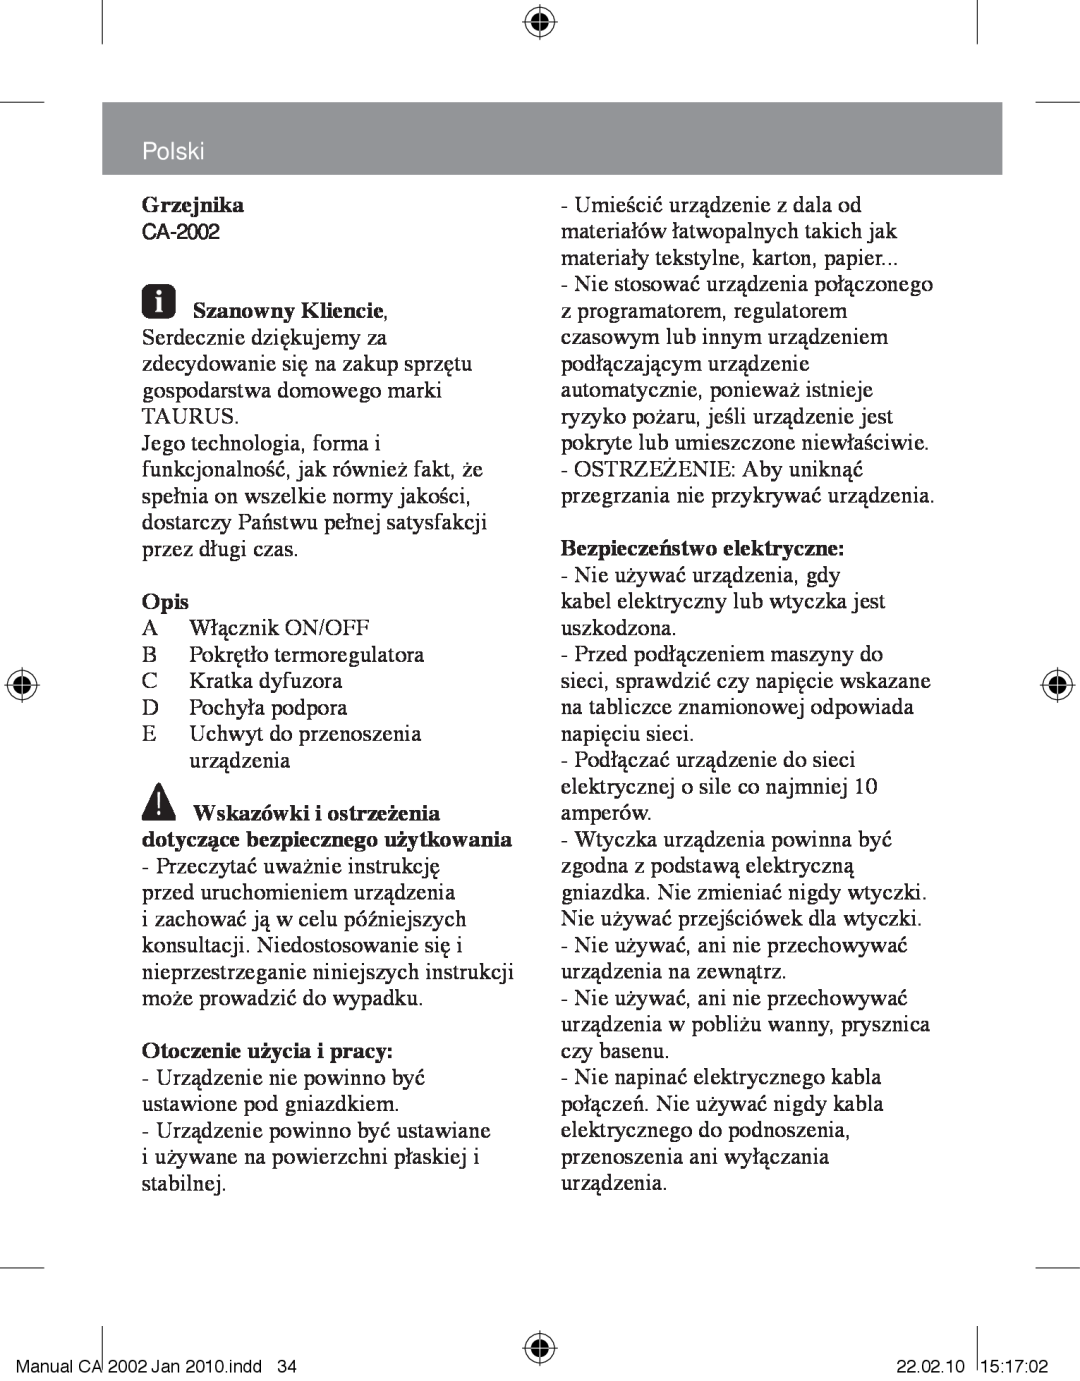 Taurus Group CA-2002 manual Polski, Grzejnika, Opis, Otoczenie użycia i pracy, Bezpieczeństwo elektryczne 